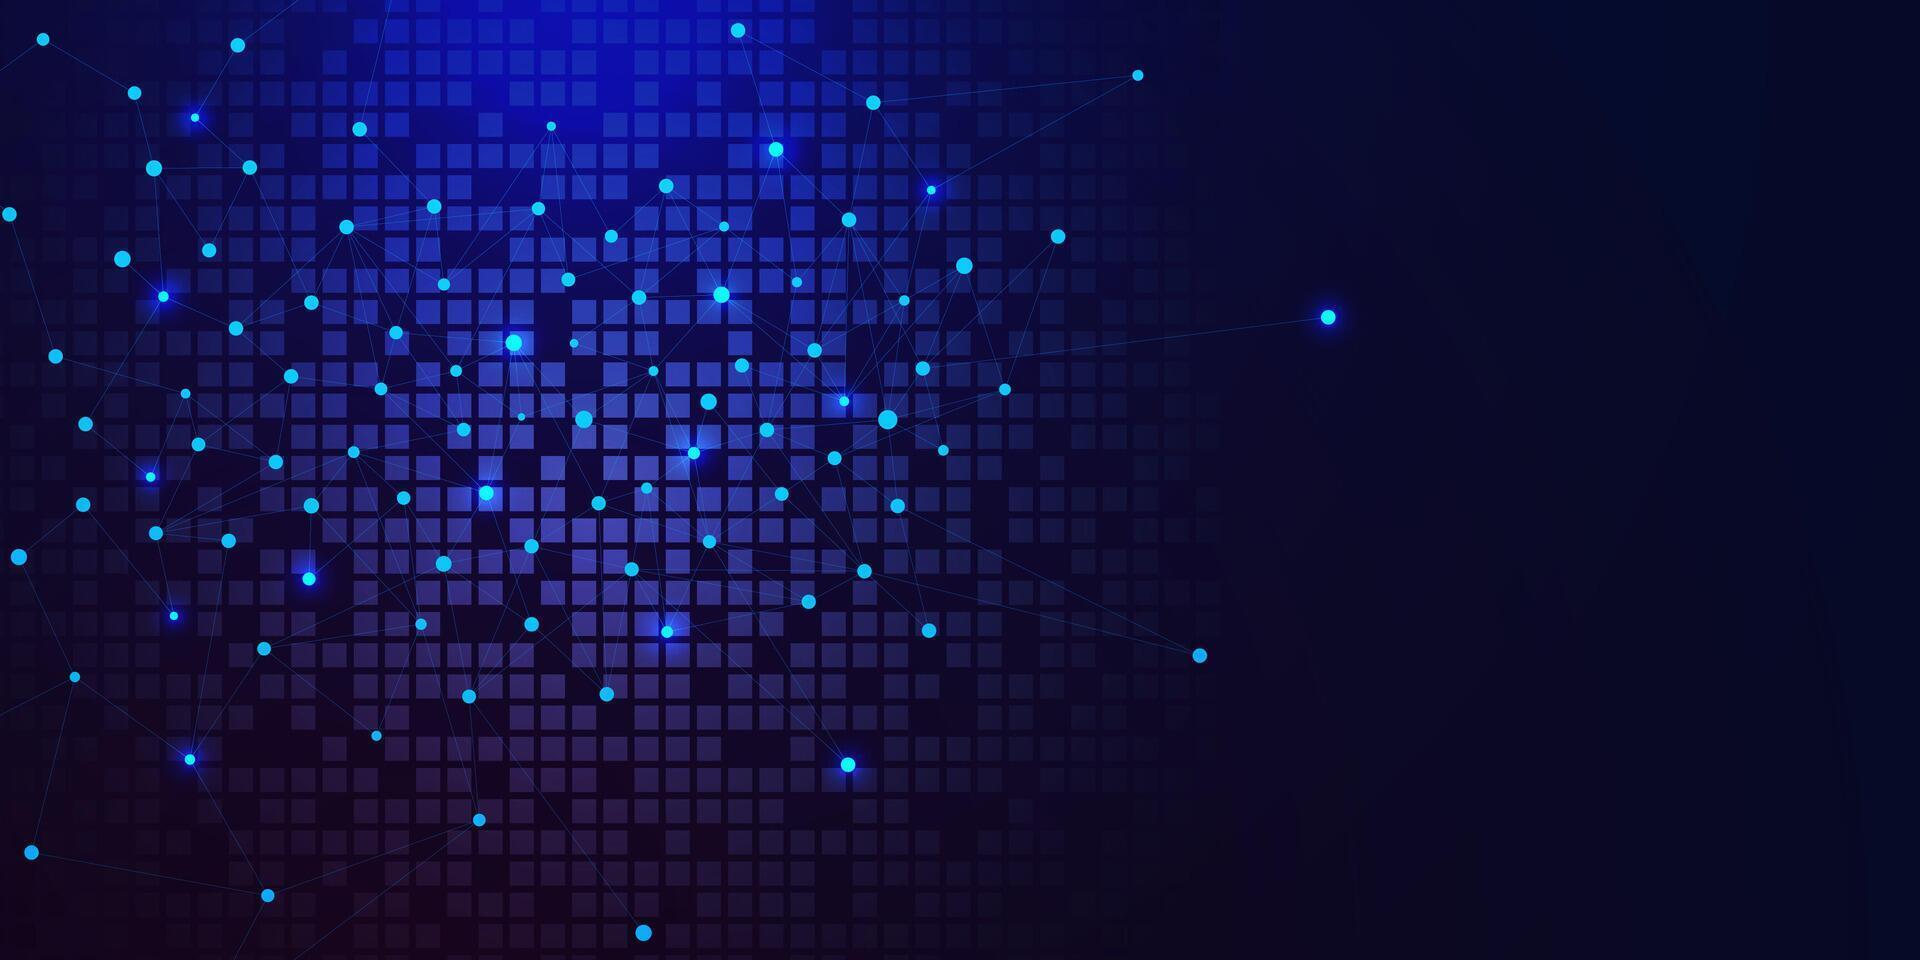 global Netzwerk Verbindung Konzept mit verbinden das Punkte und Linien und Digital Pixel auf dunkel Blau Hintergrund. Vektor Illustration.